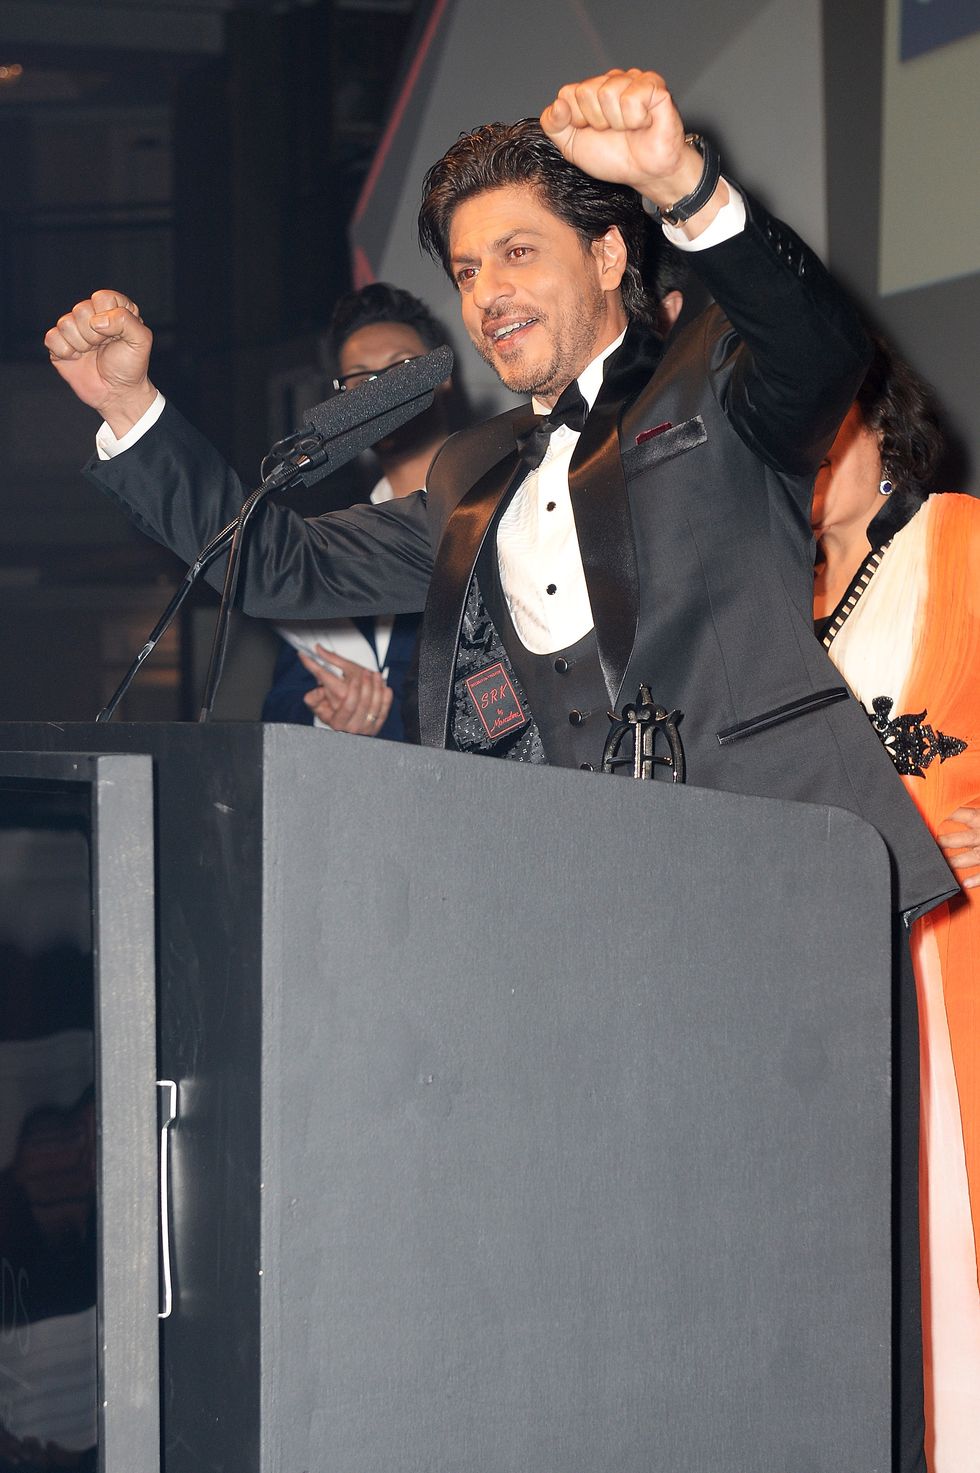 Shah Rukh Khan Zayn Malik tweet Asian Awards 2015 - Asian Culture